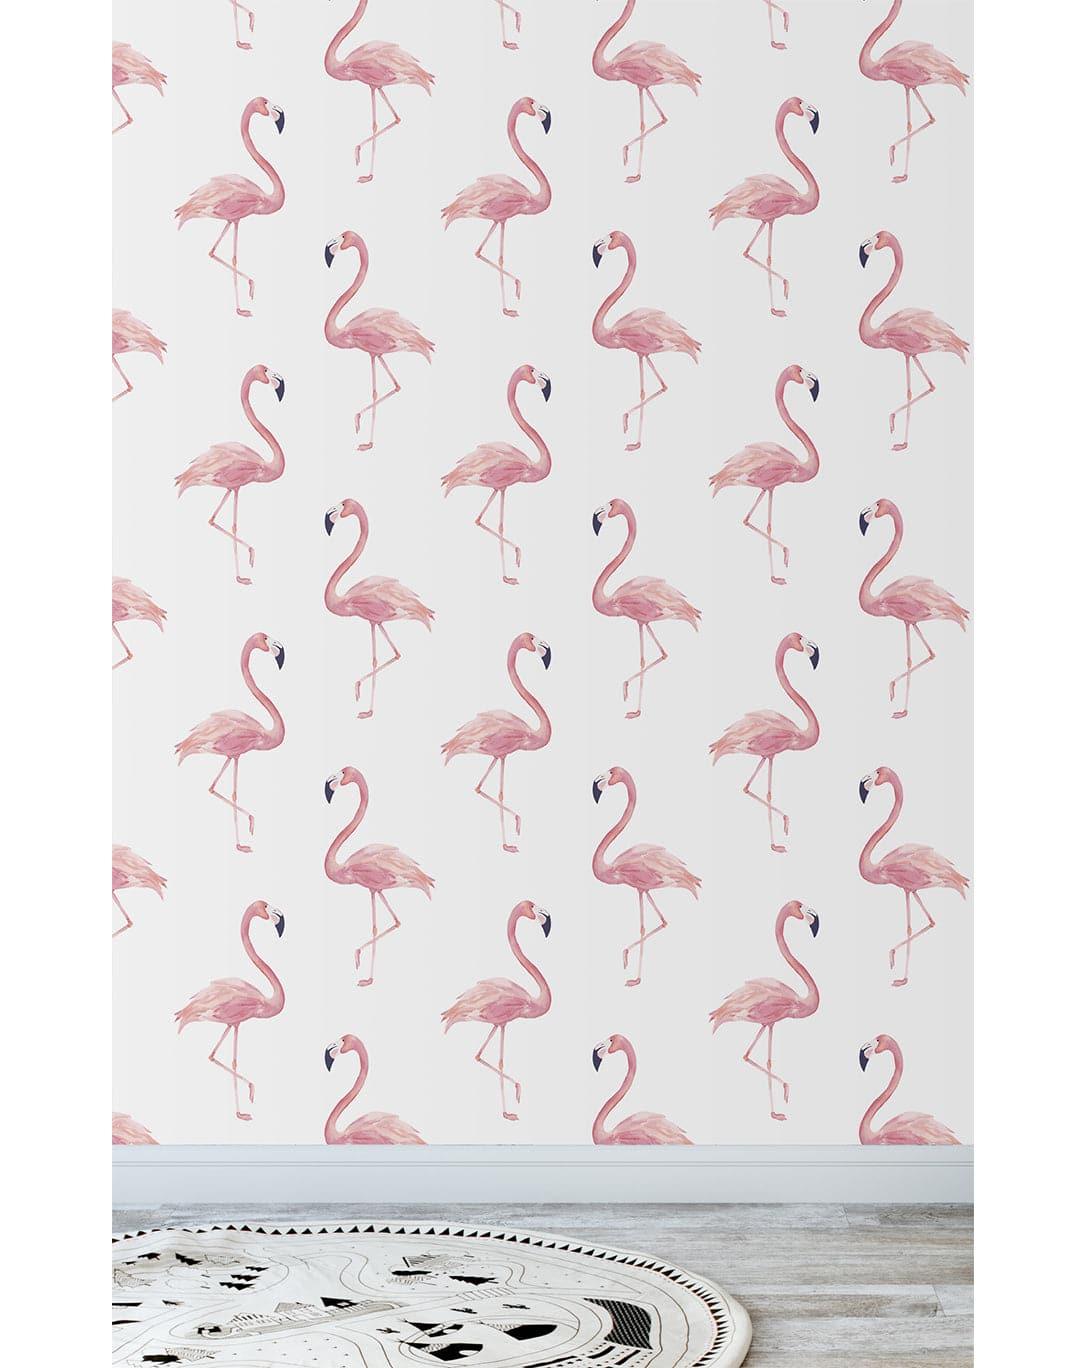 Watercolor Exotic Pink Flamingos Wallpaper Watercolor Exotic Pink Flamingos Wallpaper Watercolor Exotic Pink Flamingos Wallpaper 